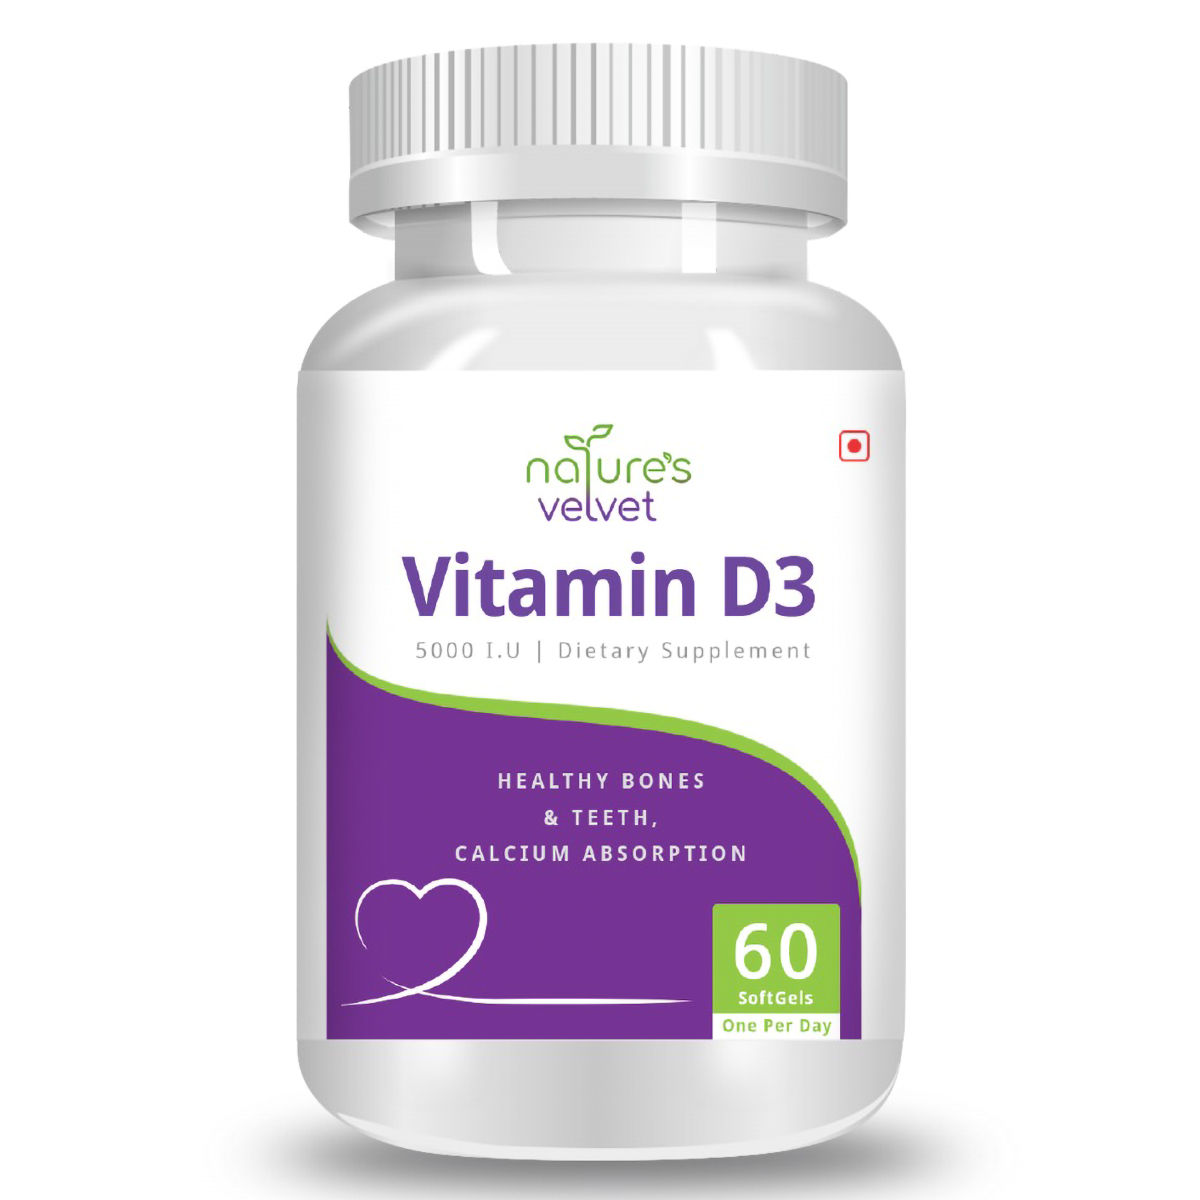 Buy Nature's Velvet Vitamin D3 5000 IU, 60 Softgels Online